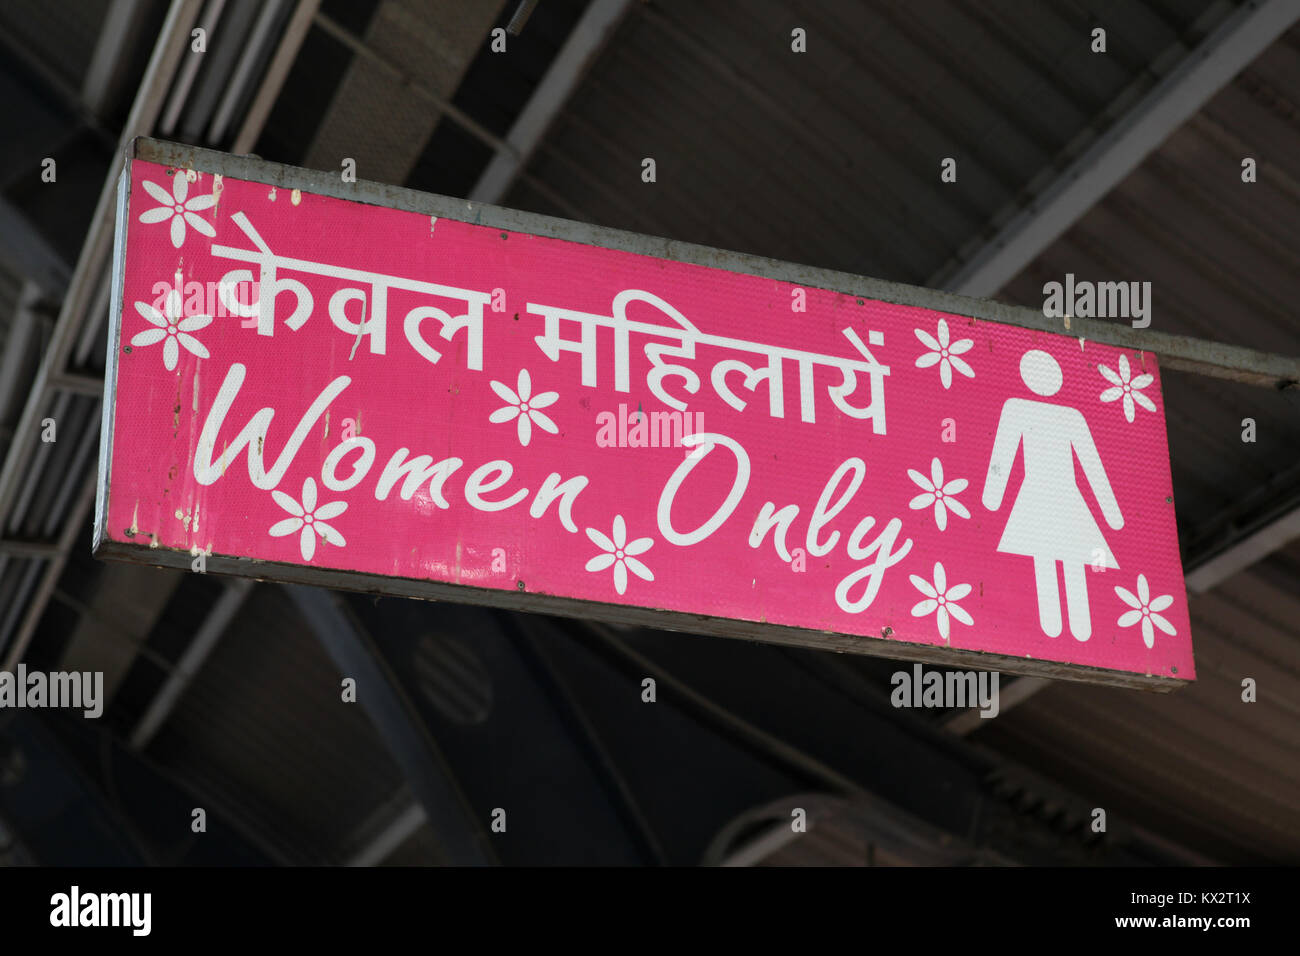 Les femmes d'un seul signe (pour chariots qui sont pour les femmes) à une station de métro à New Delhi, Inde Banque D'Images